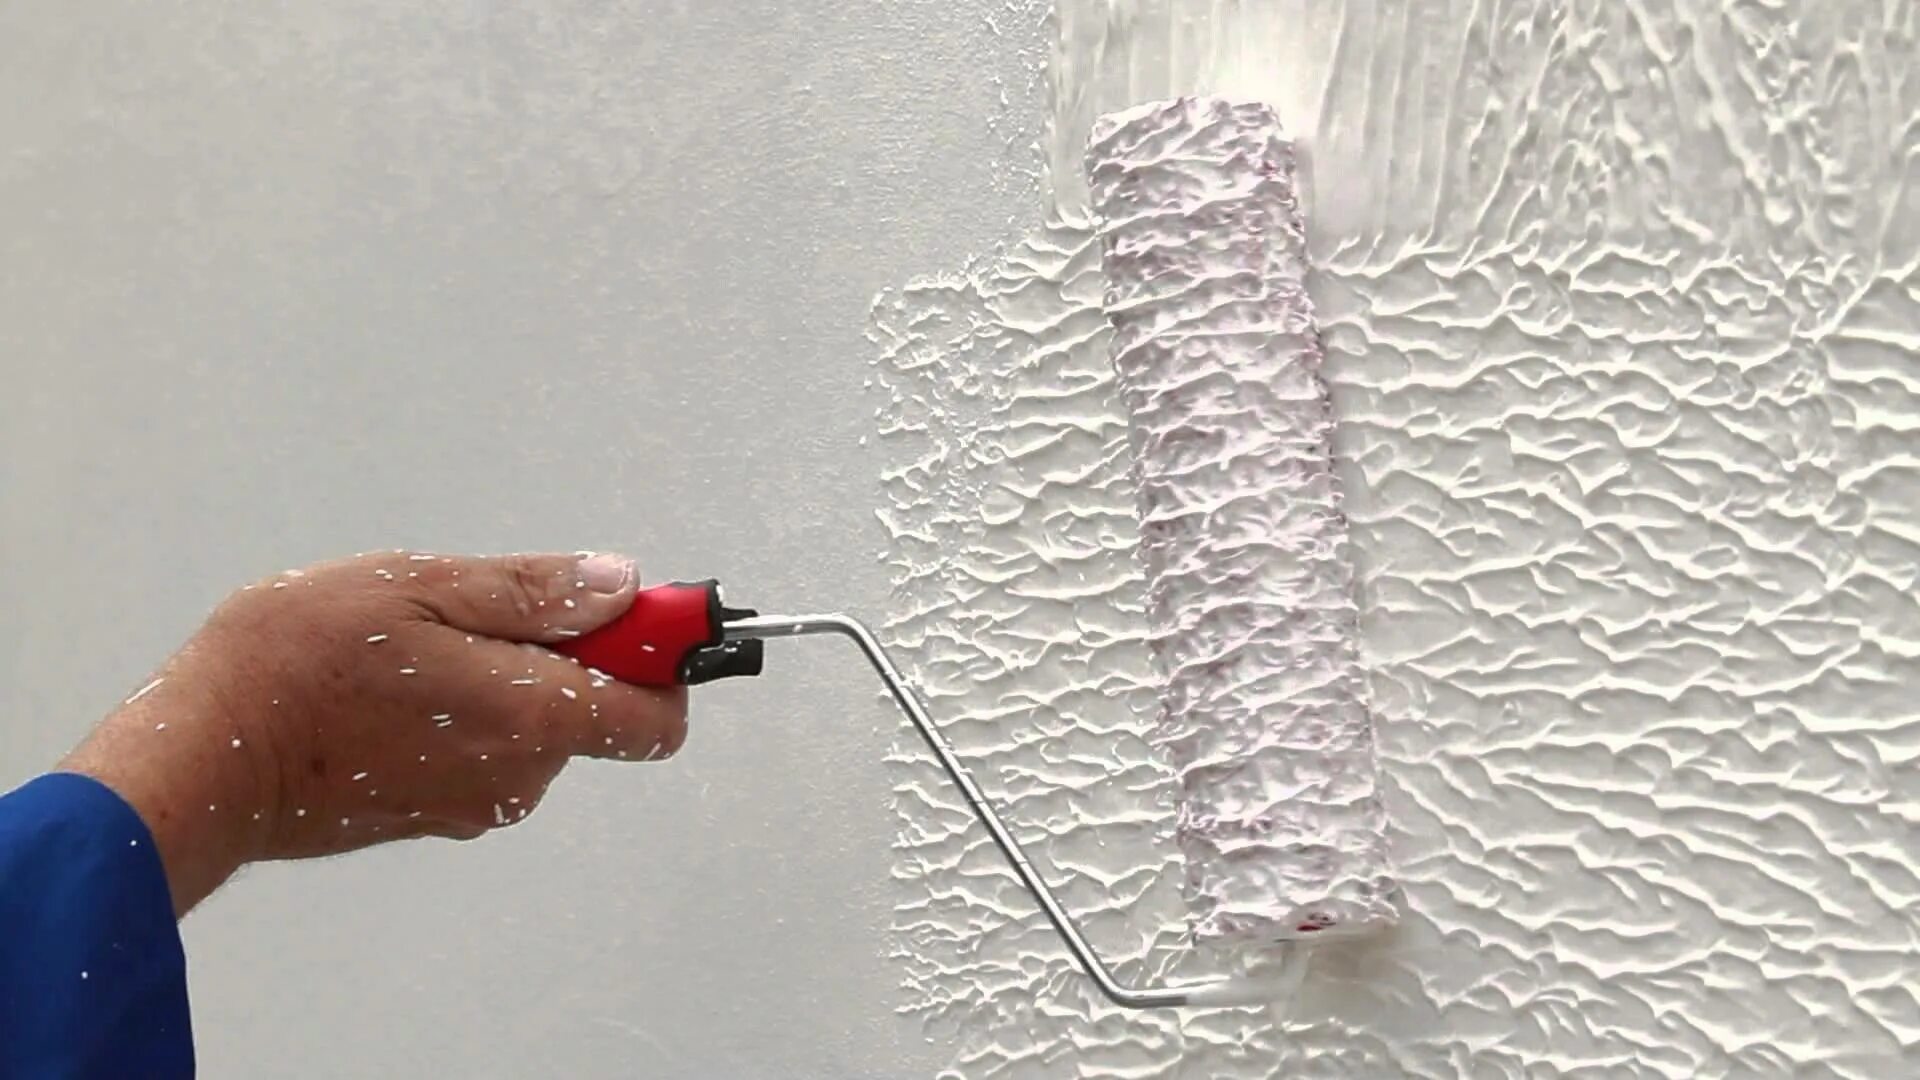 На шпаклевку можно наносить штукатурку. Фактурная шпаклевка валиком. Декоративная шпатлевка для стен. Узоры шпаклевкой на стенах. Структурная краска.